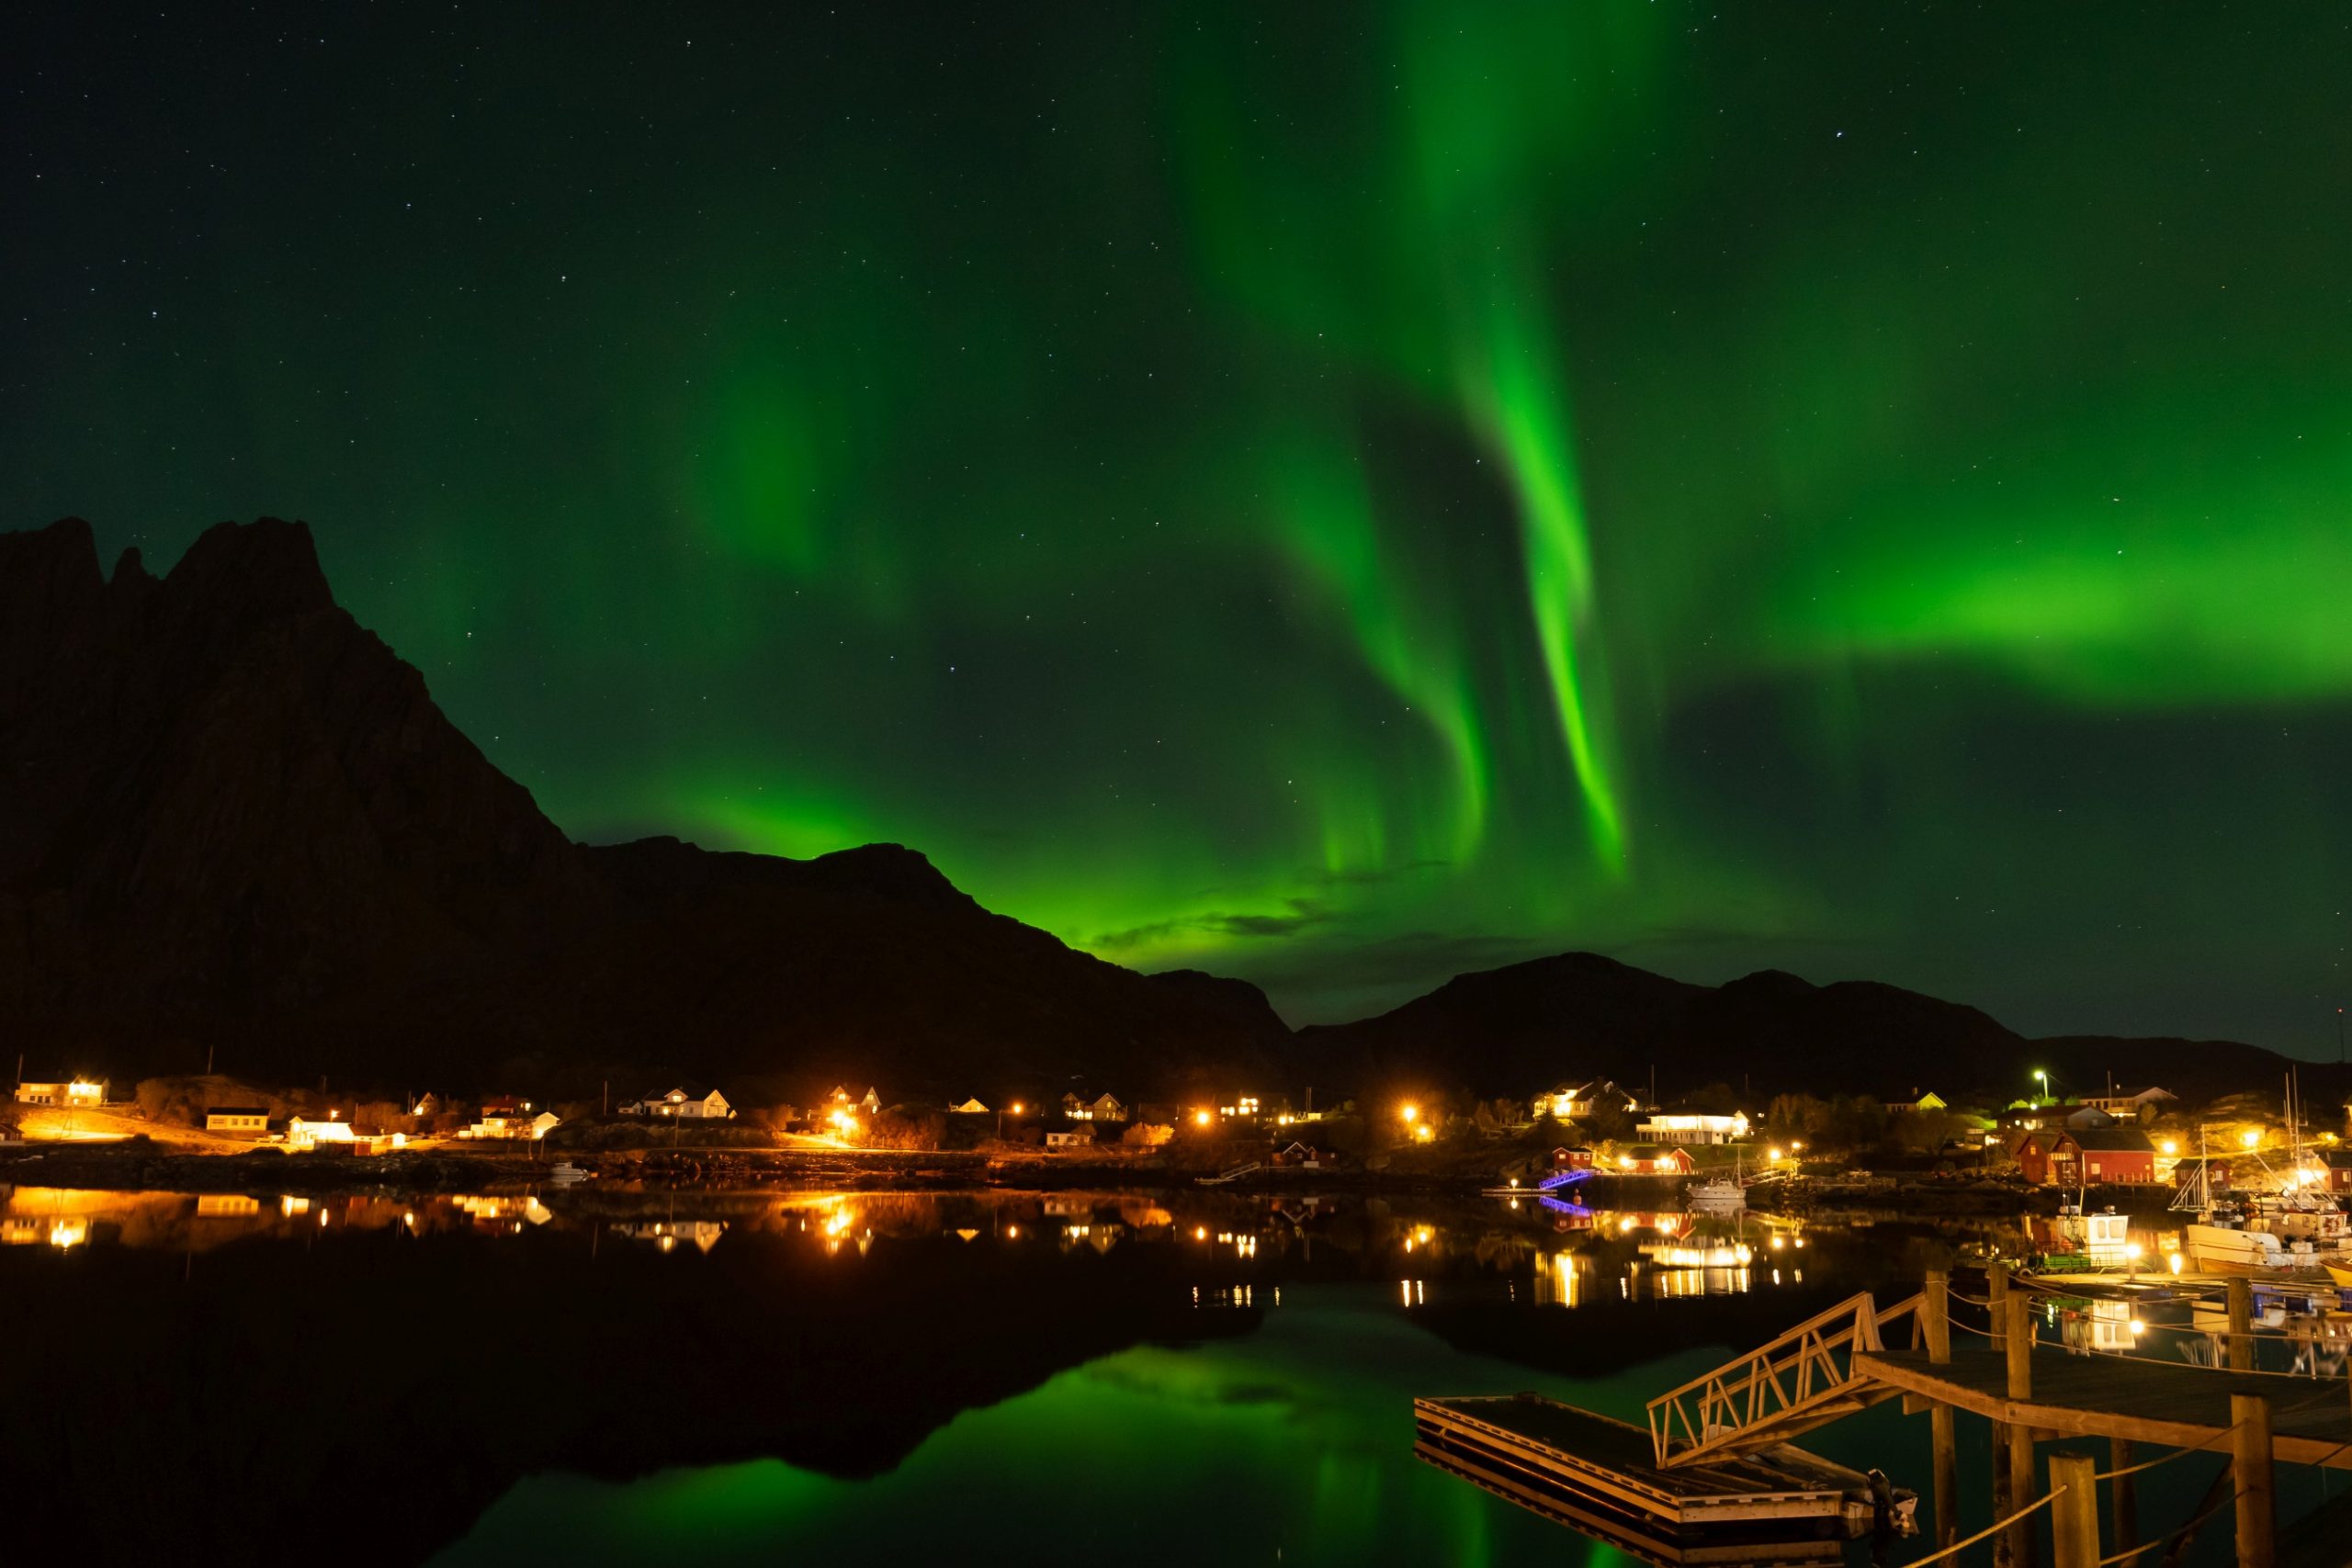 Wie kannst du die fantastischen Polarlichter fotografieren?